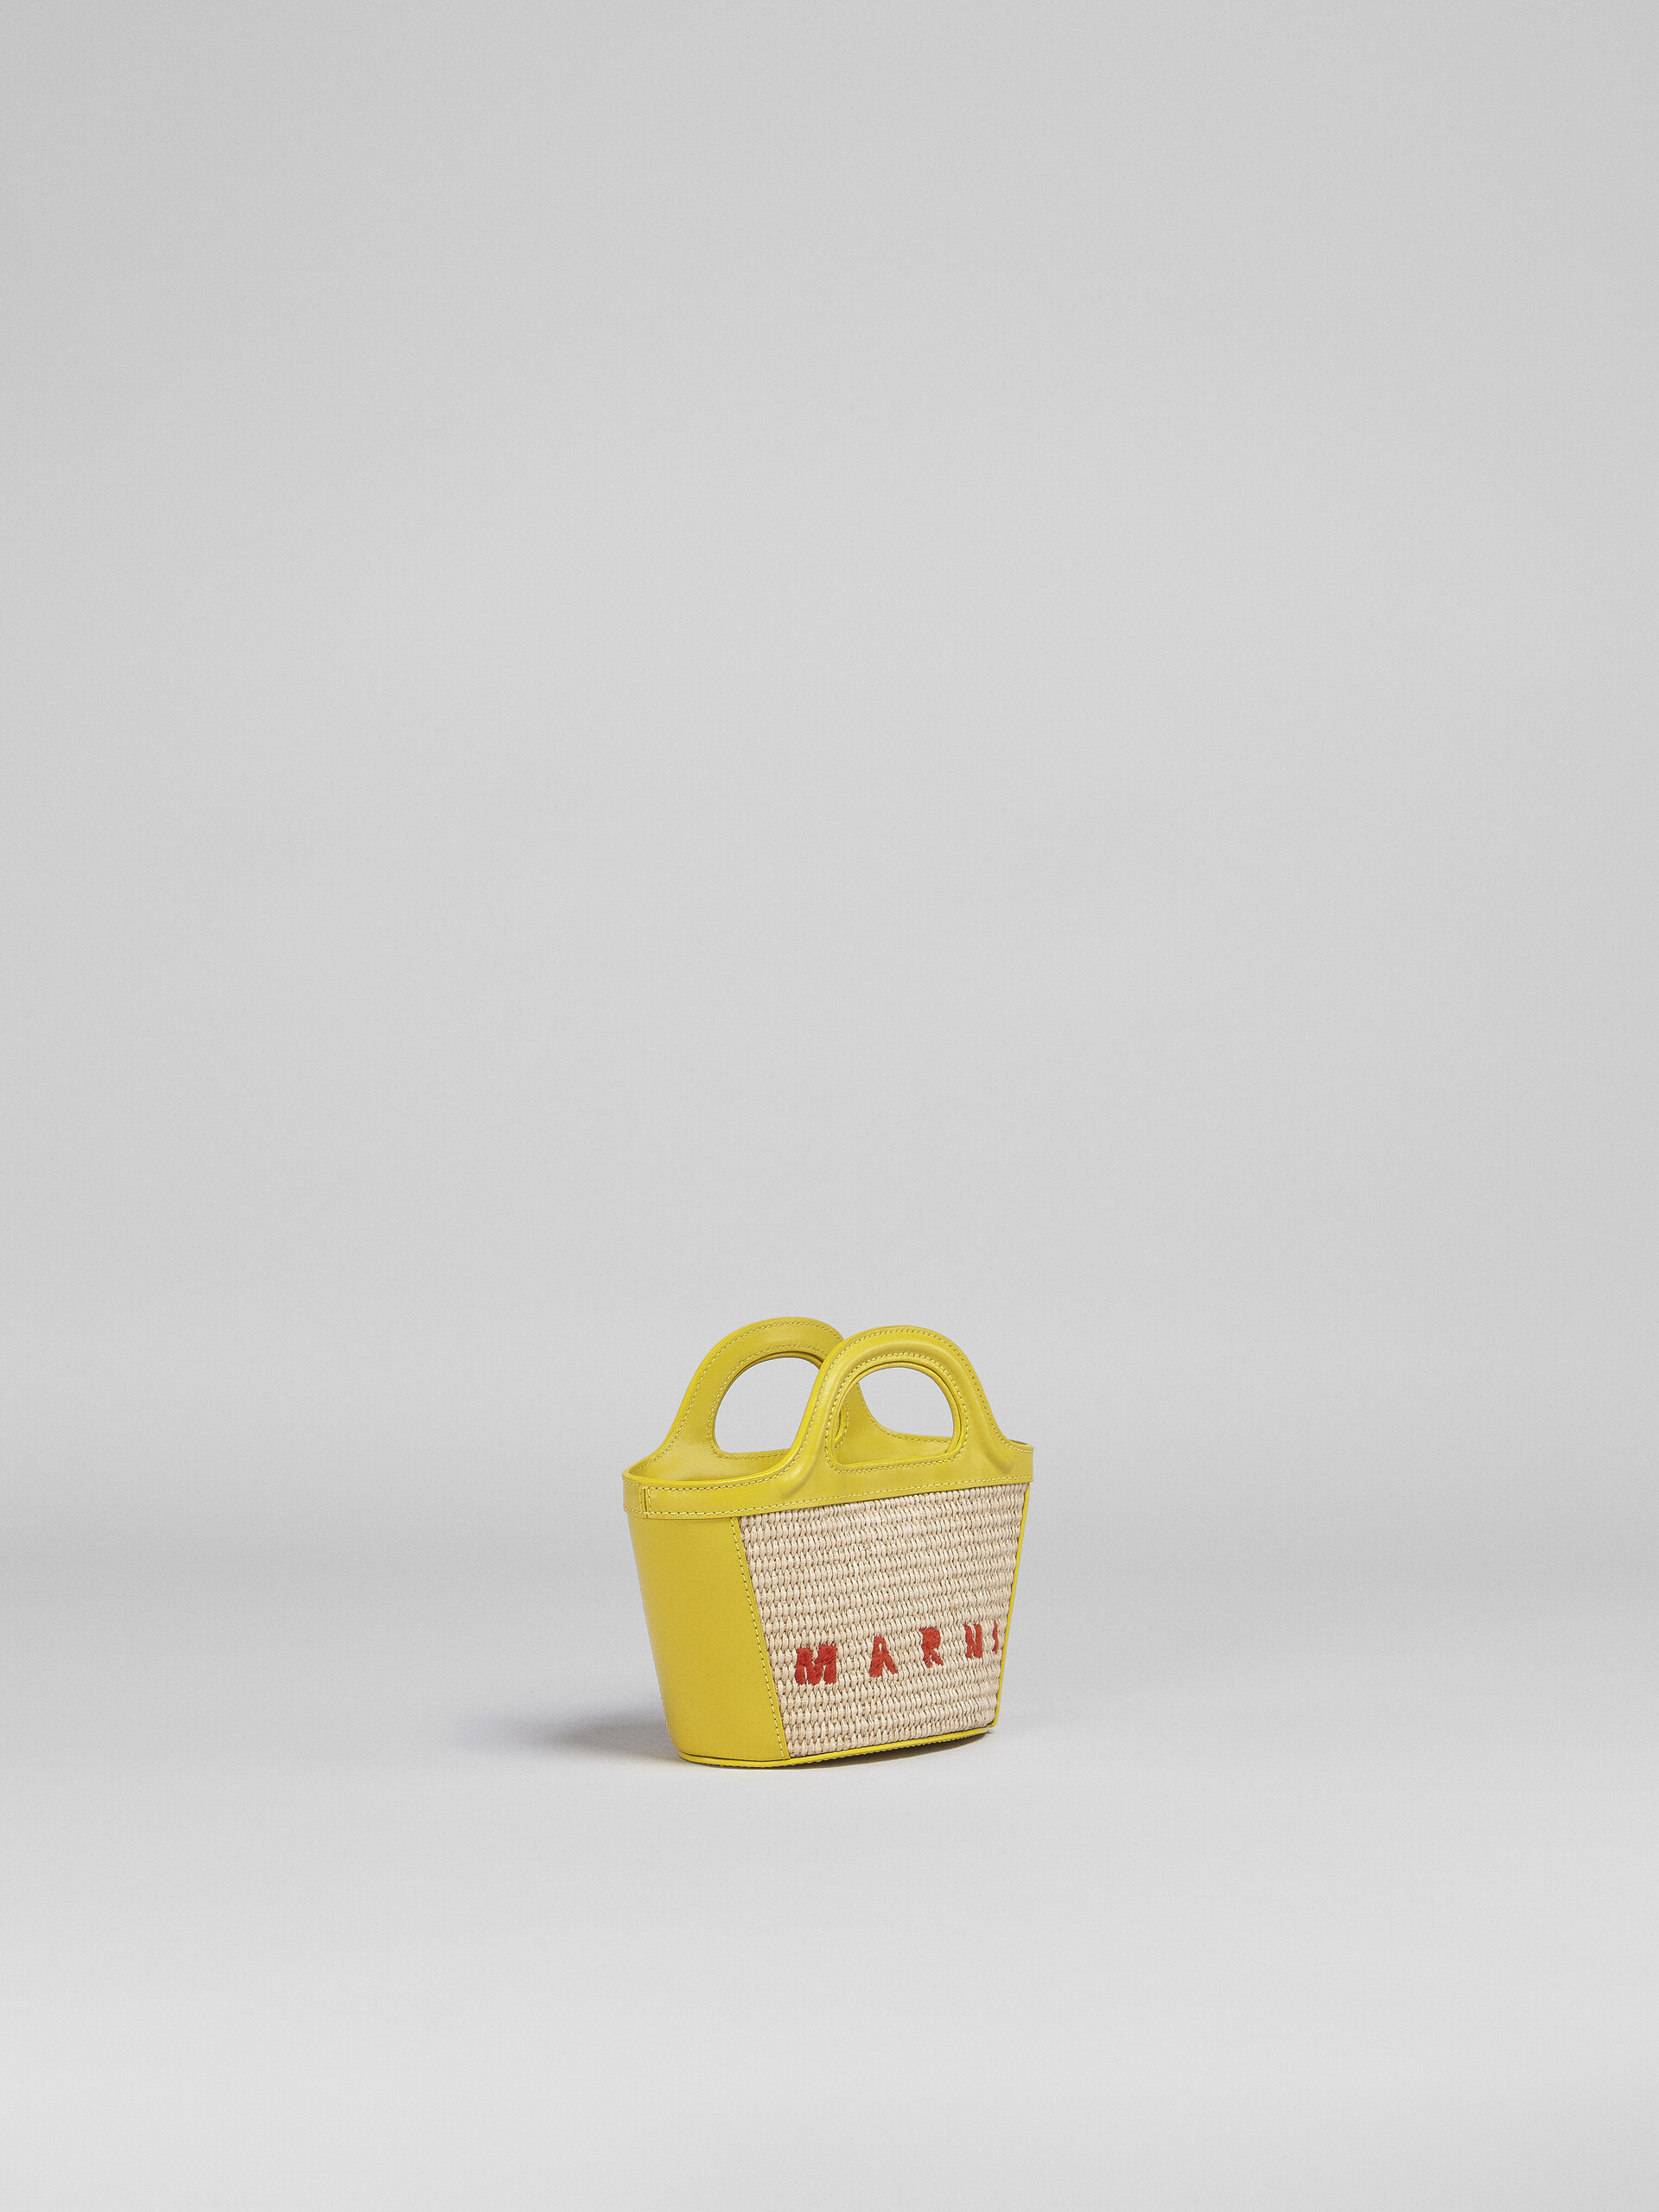 TROPICALIA bag micro in pelle gialla e rafia - Borse a mano - Image 5